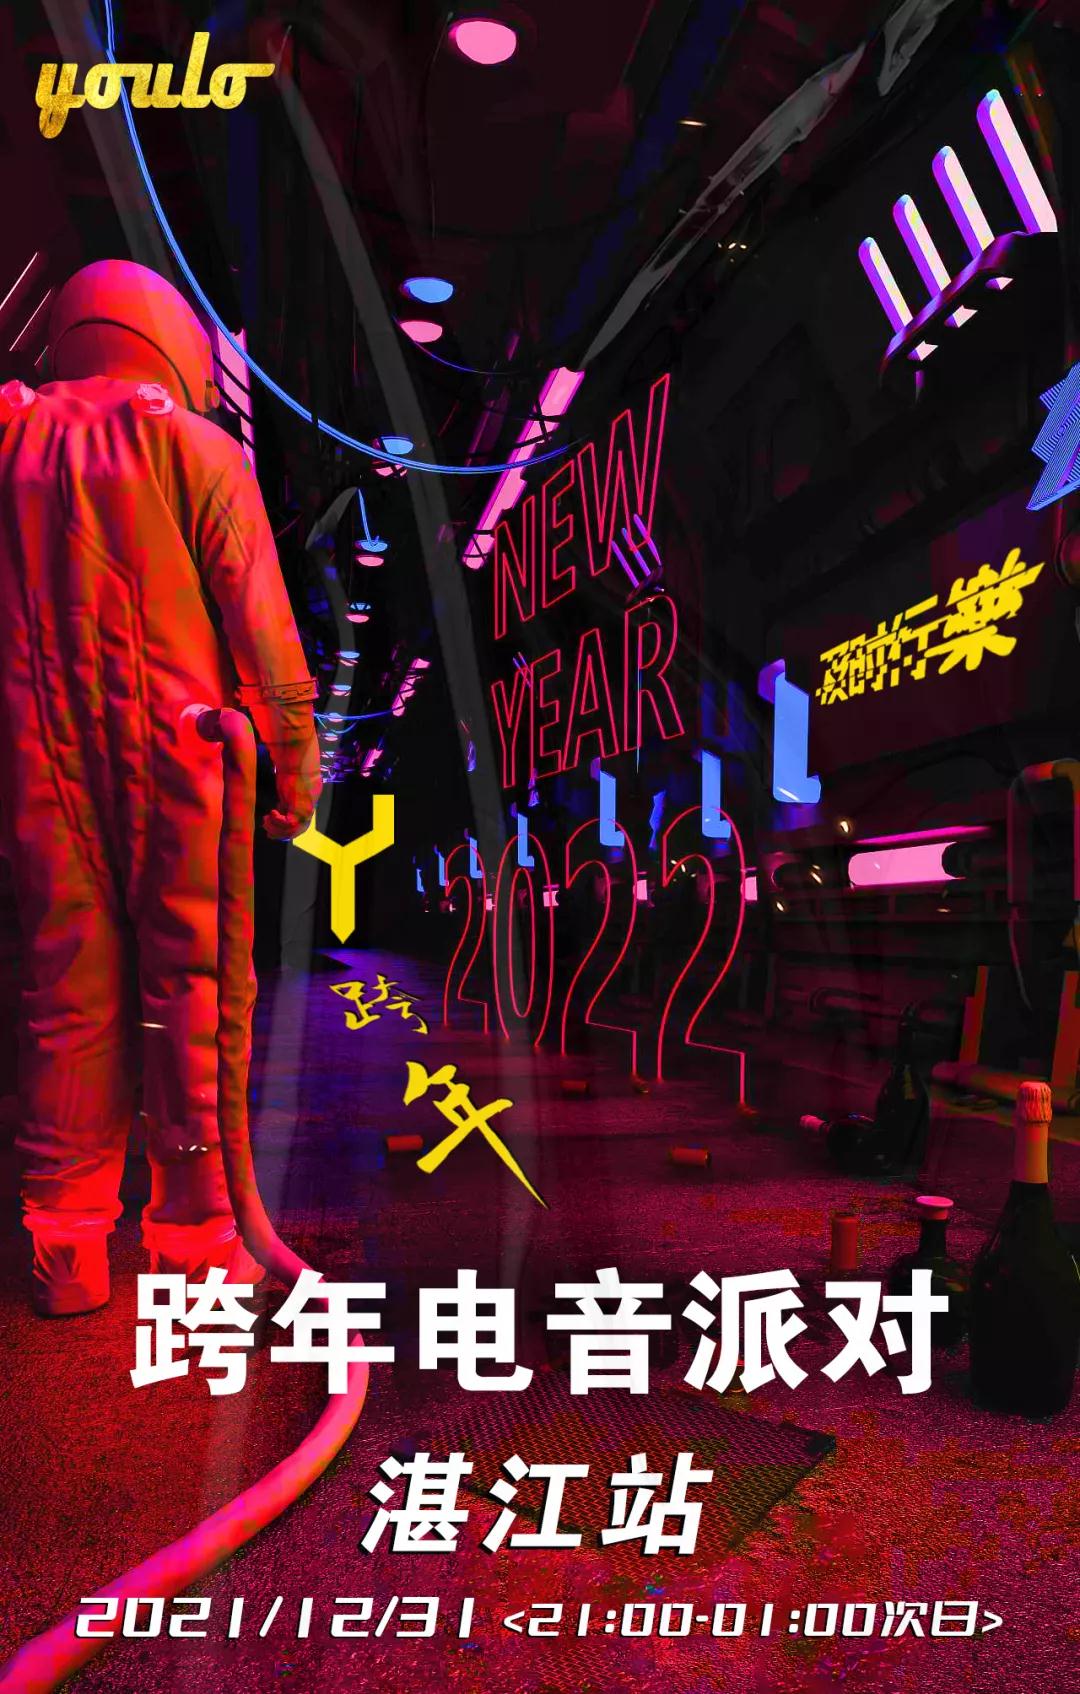 2021湛江YOULO跨年电音派对购票方式及演出详情